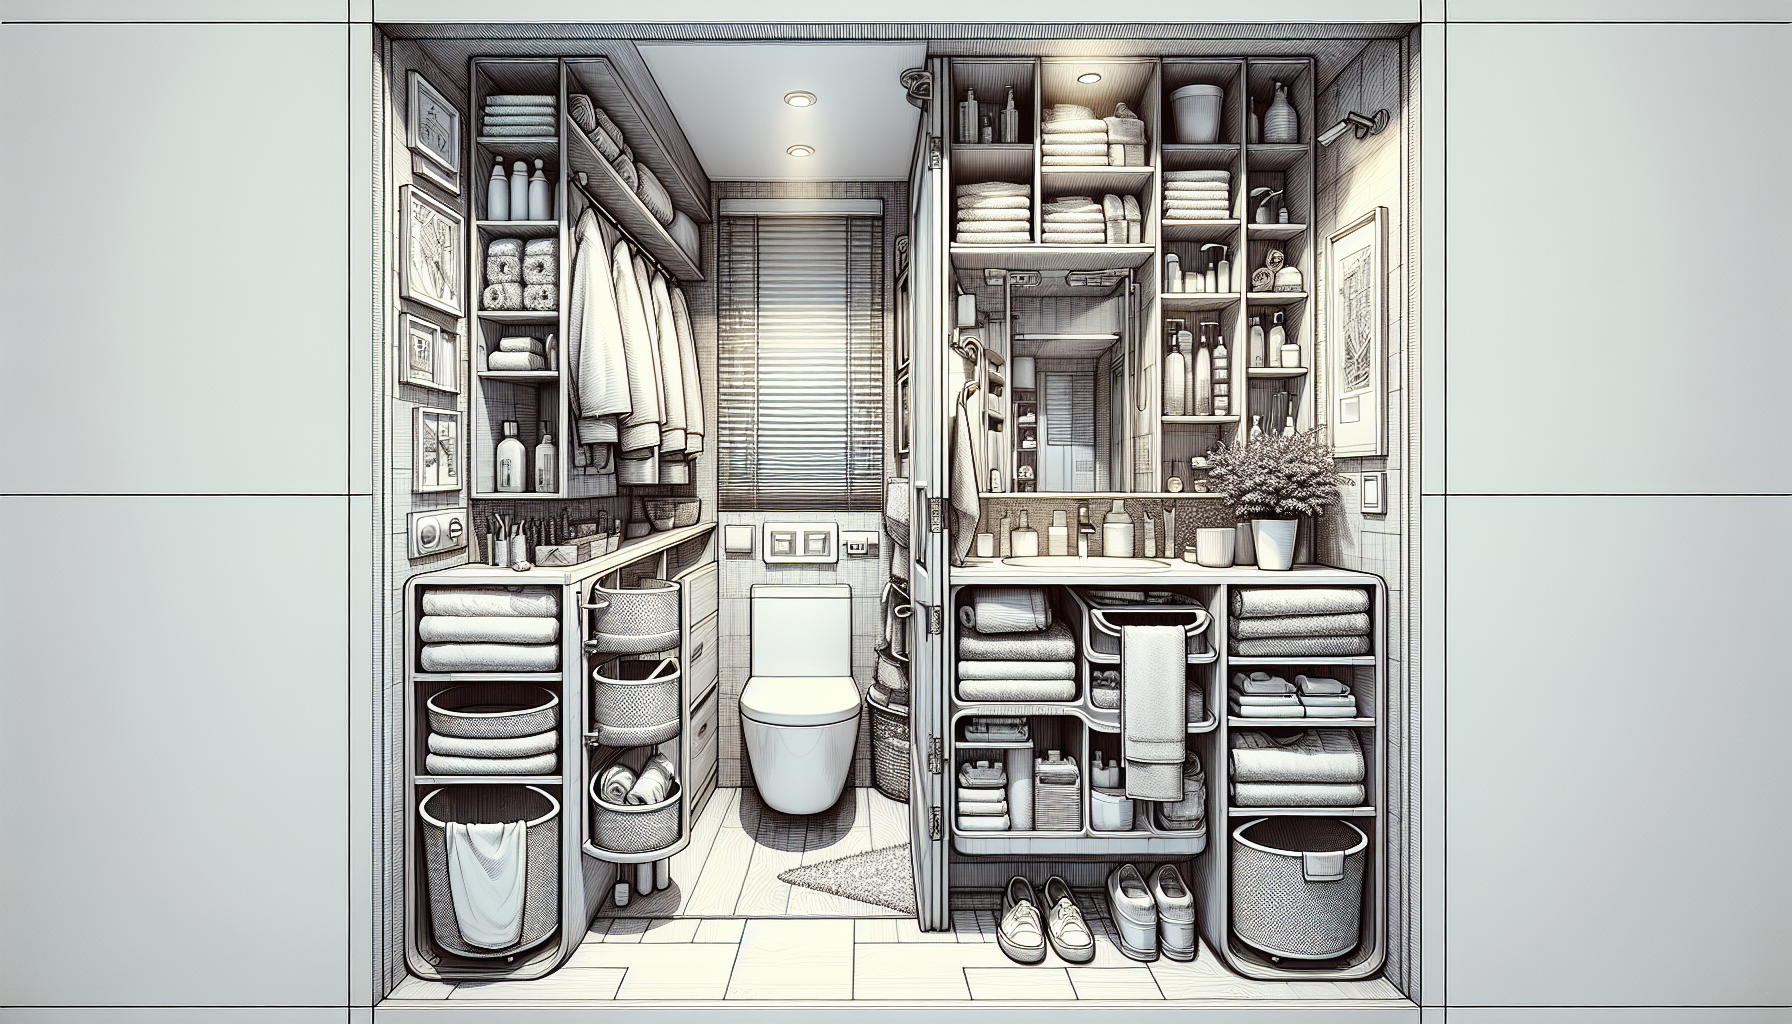 Illustration eines kleinen Badezimmers mit effizienter Raumnutzung durch Überbau-Systeme, Wandregale und multifunktionale Möbel